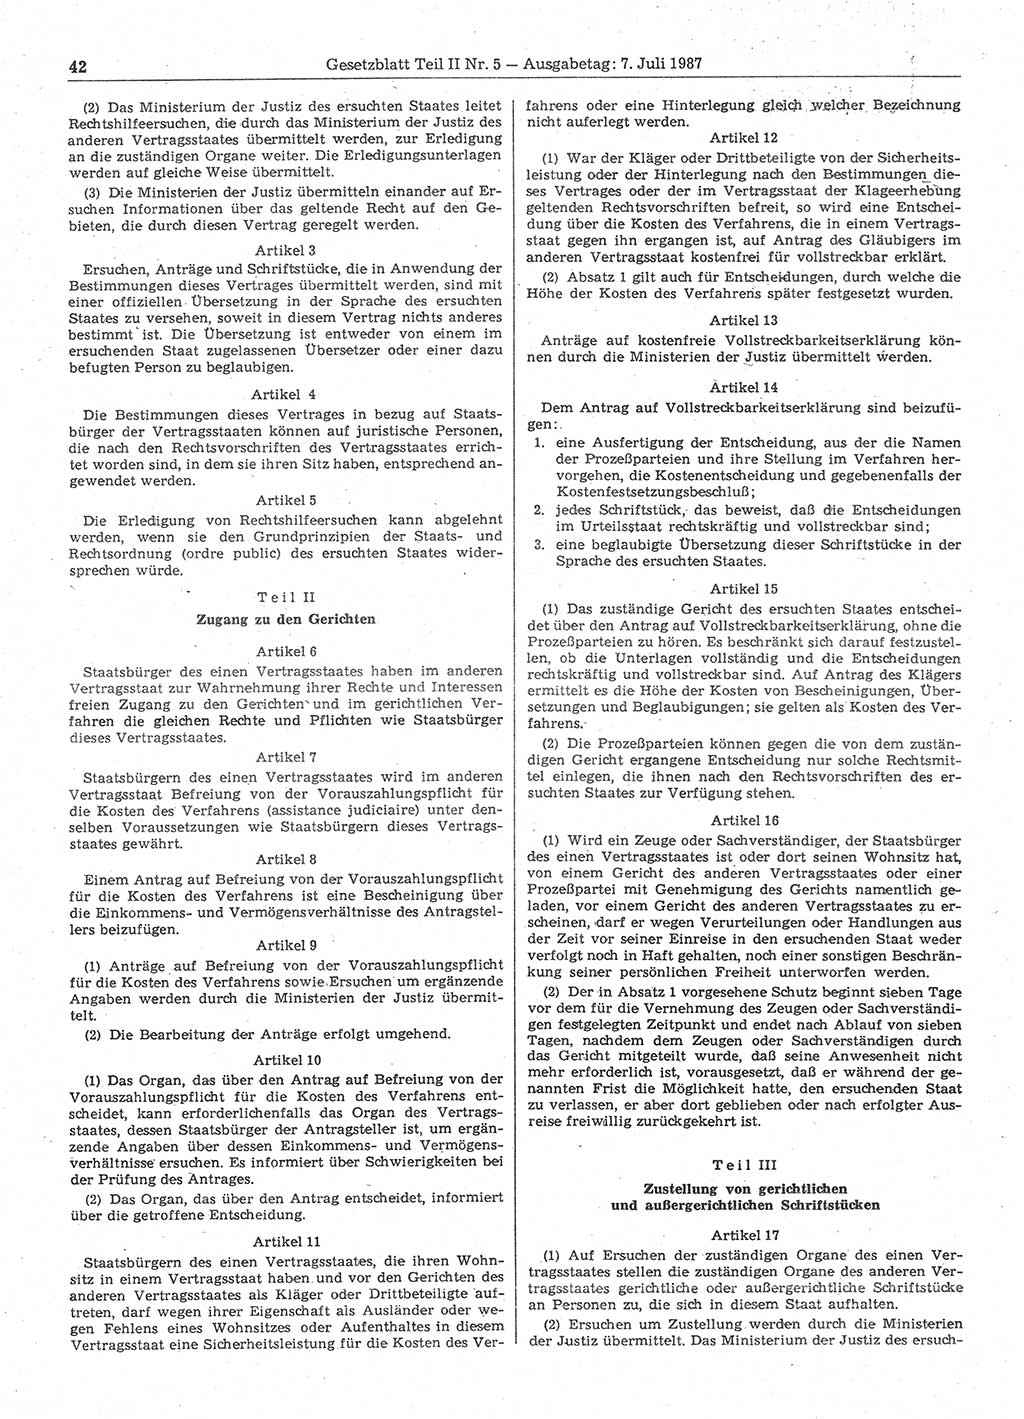 Gesetzblatt (GBl.) der Deutschen Demokratischen Republik (DDR) Teil ⅠⅠ 1987, Seite 42 (GBl. DDR ⅠⅠ 1987, S. 42)